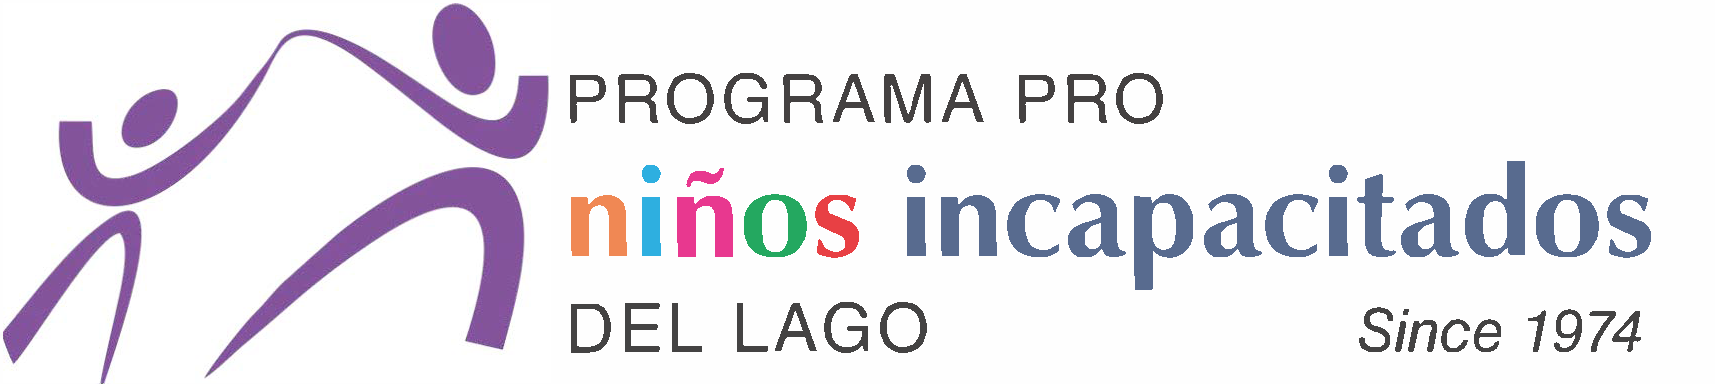 Programa Pro Niños Incapacitados del Lago A.C. logo